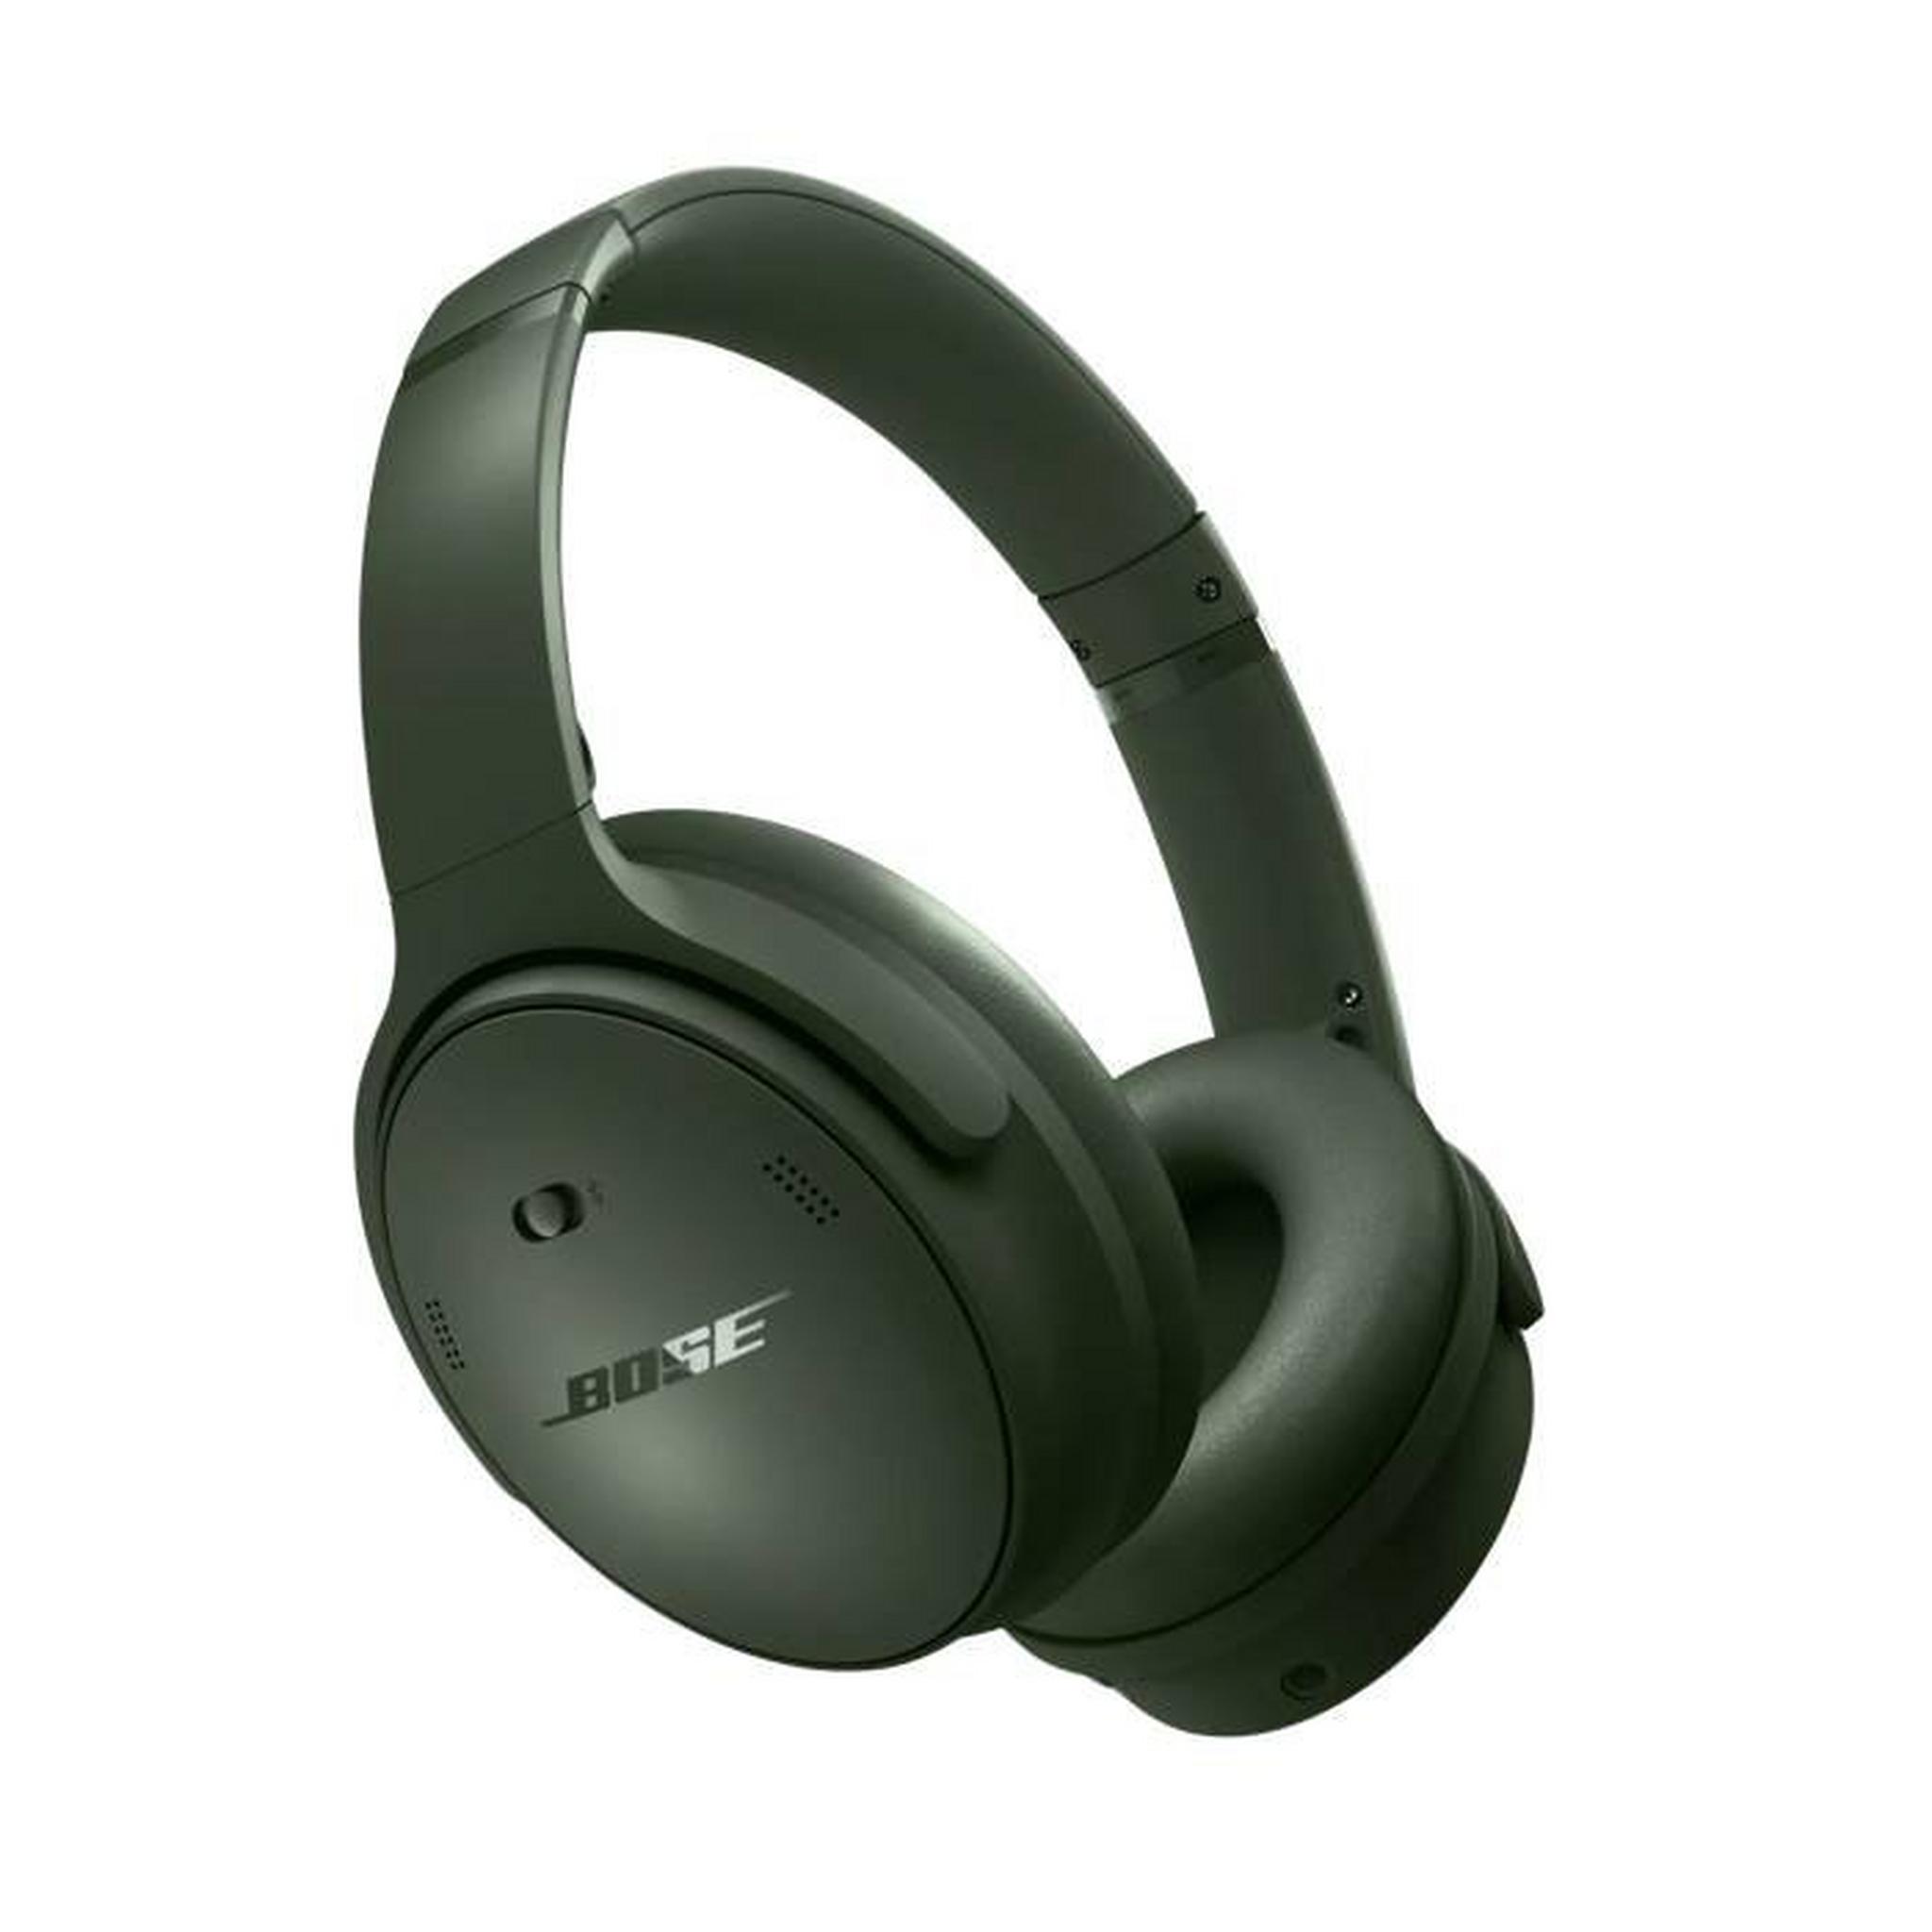 Bose Quiet Comfort Wireless Headphones – Green